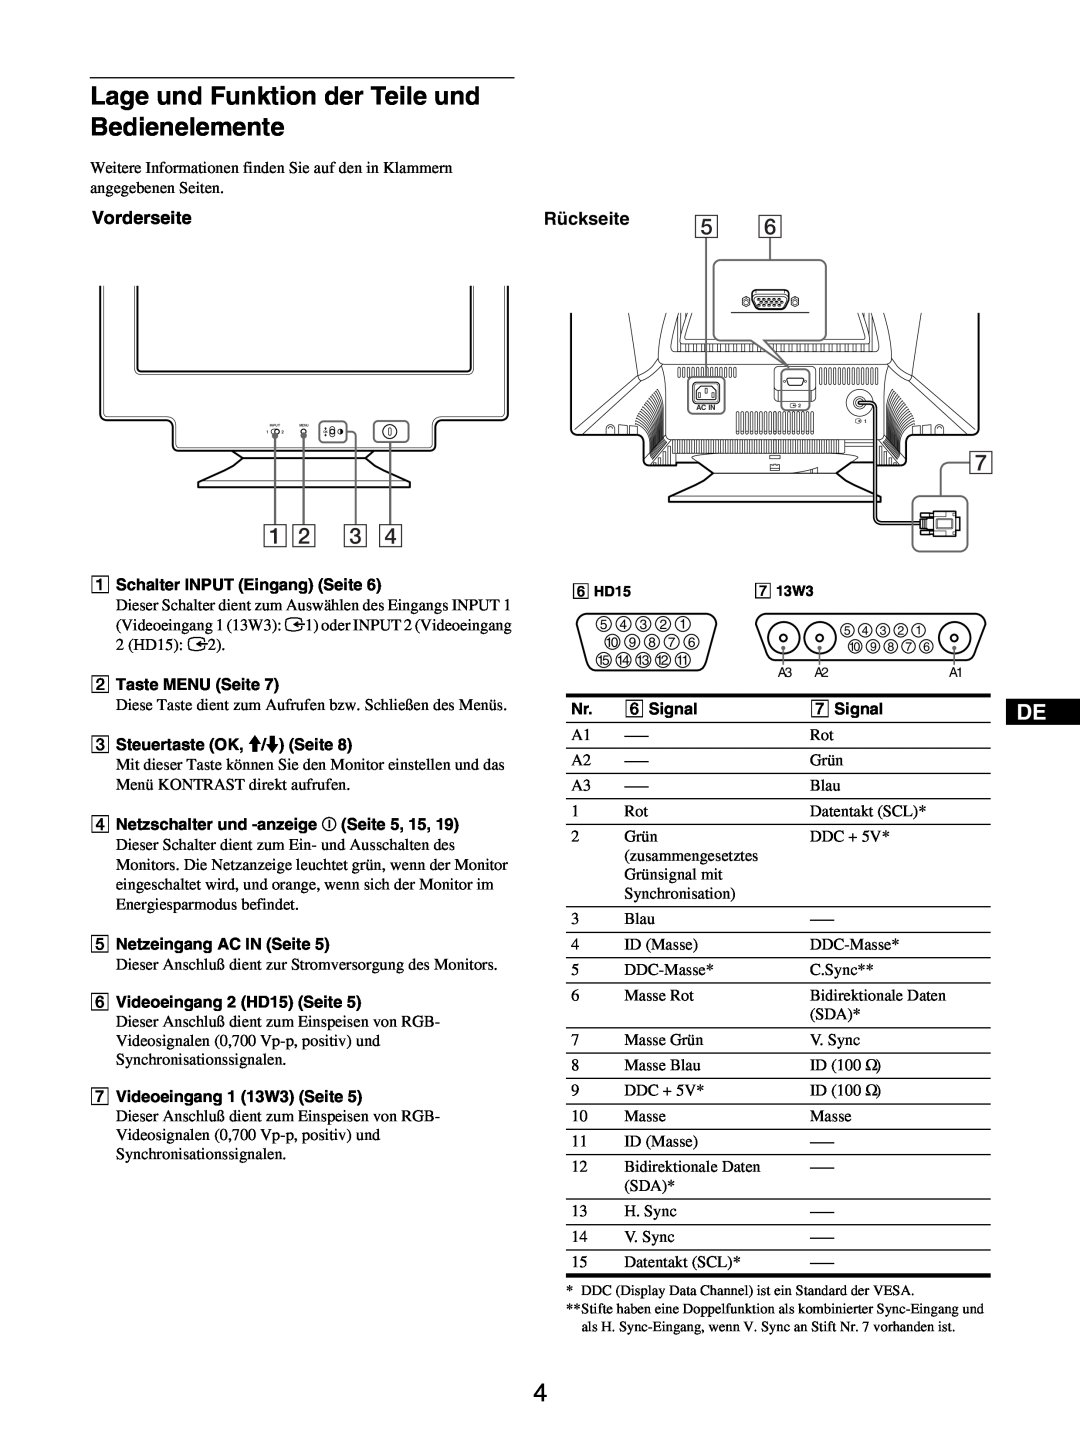 Sony GDM-5510 operating instructions Lage und Funktion der Teile und Bedienelemente, 12 3, Vorderseite, Rückseite 